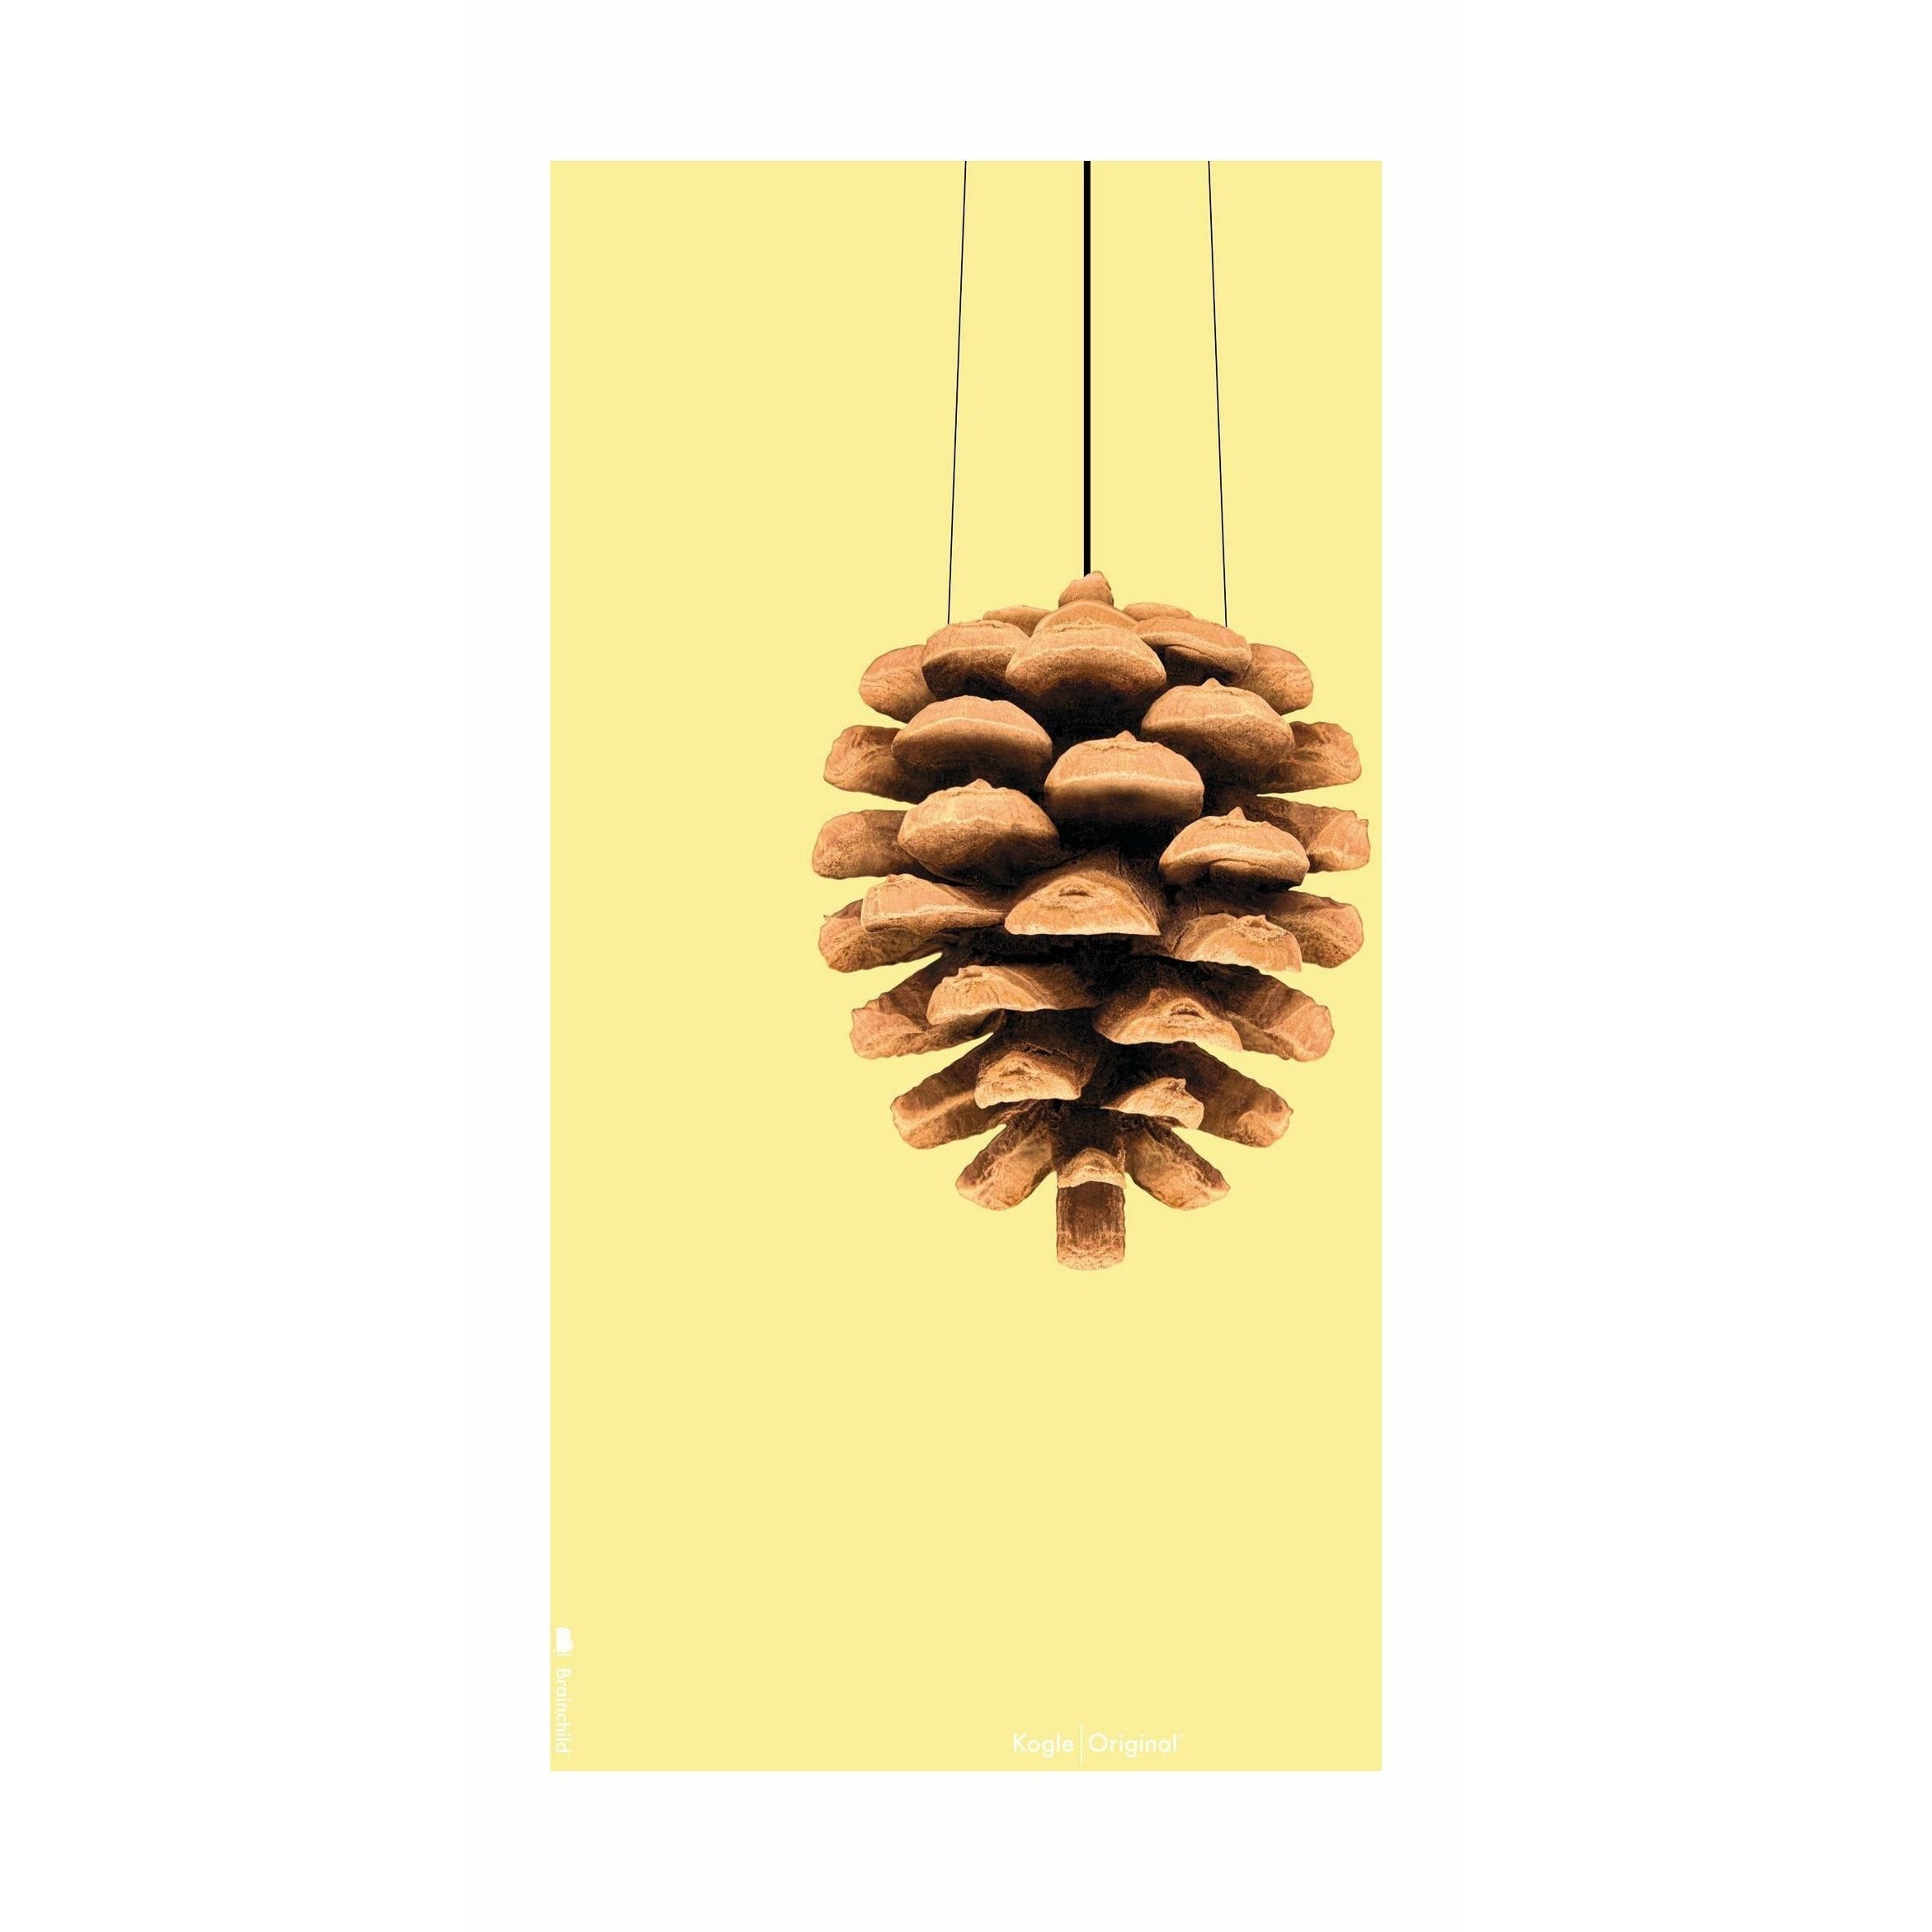 Brainchild Pine Cone Classic Poster ohne Rahmen 30 X40 Cm, gelber Hintergrund